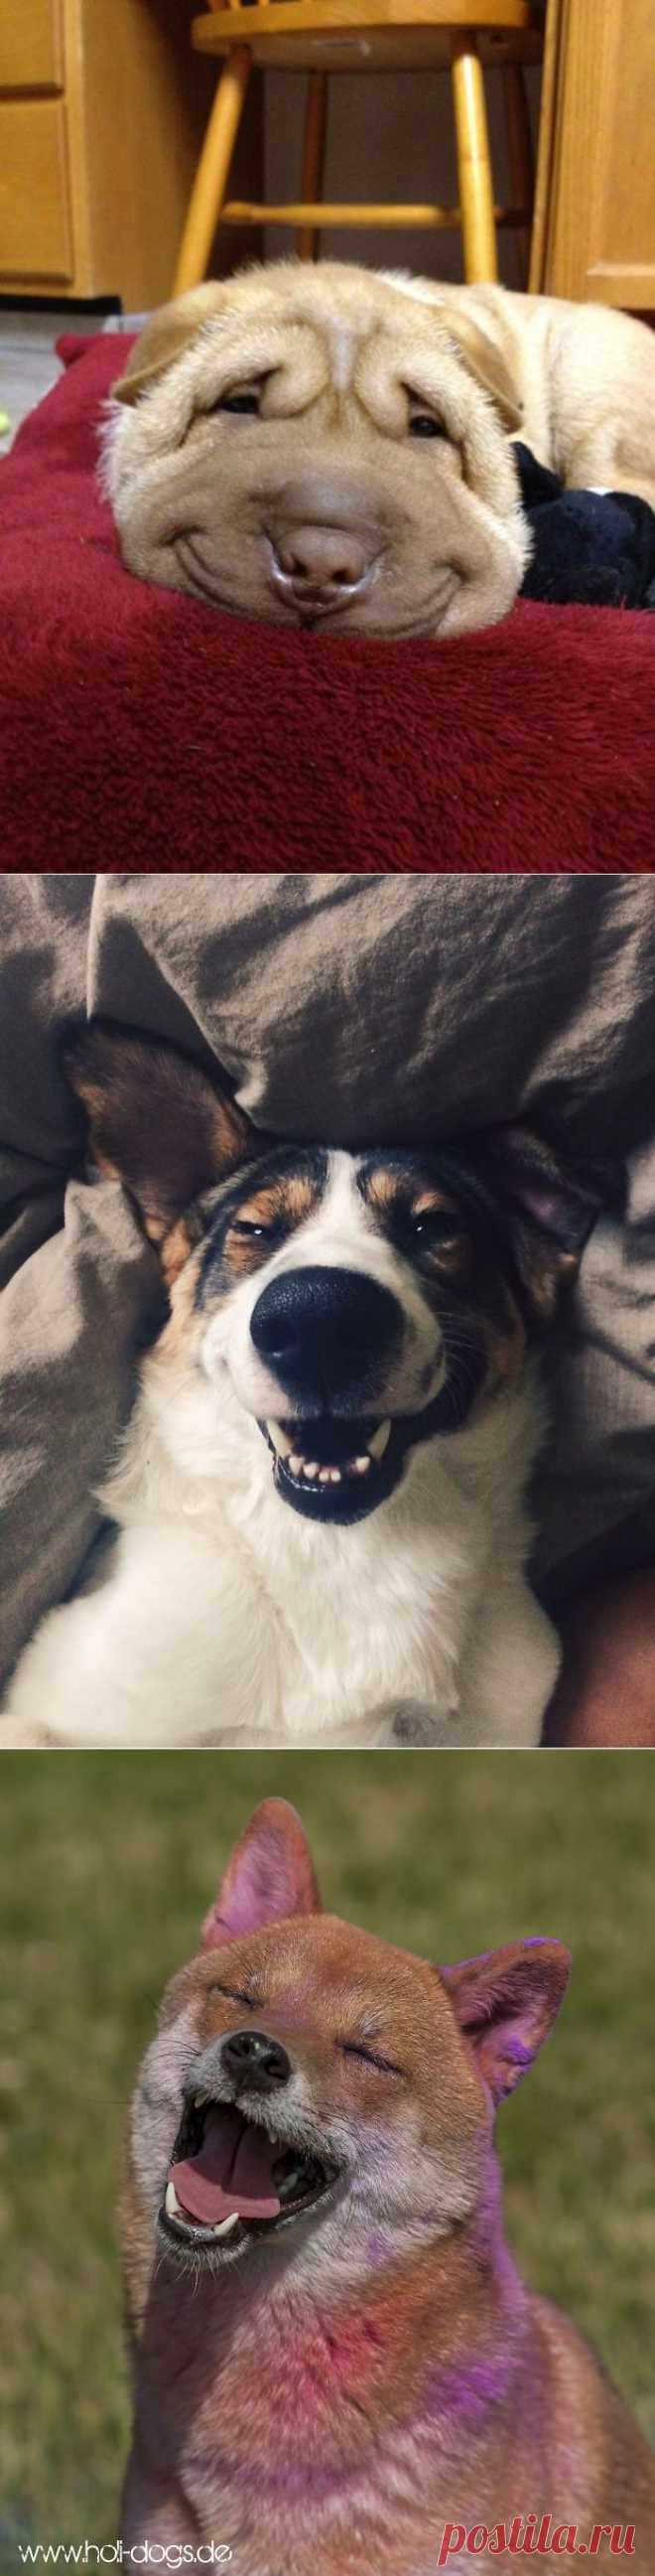 Собаки-улыбаки: счастье есть